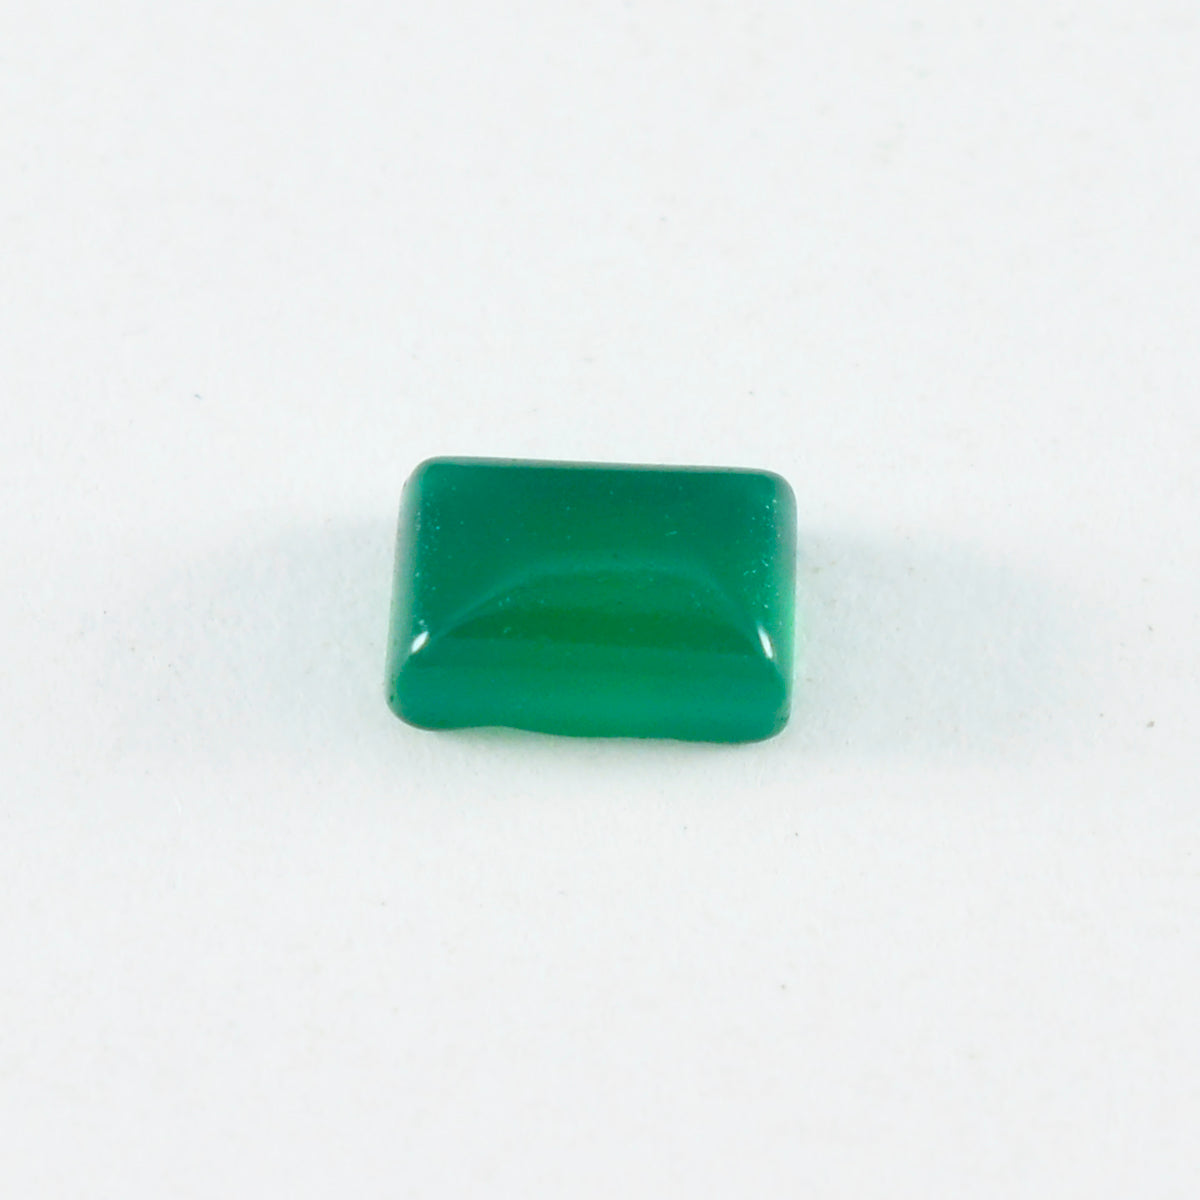 Riyogems 1 Stück grüner Onyx-Cabochon, 8 x 10 mm, Achteckform, hübscher, hochwertiger, loser Edelstein